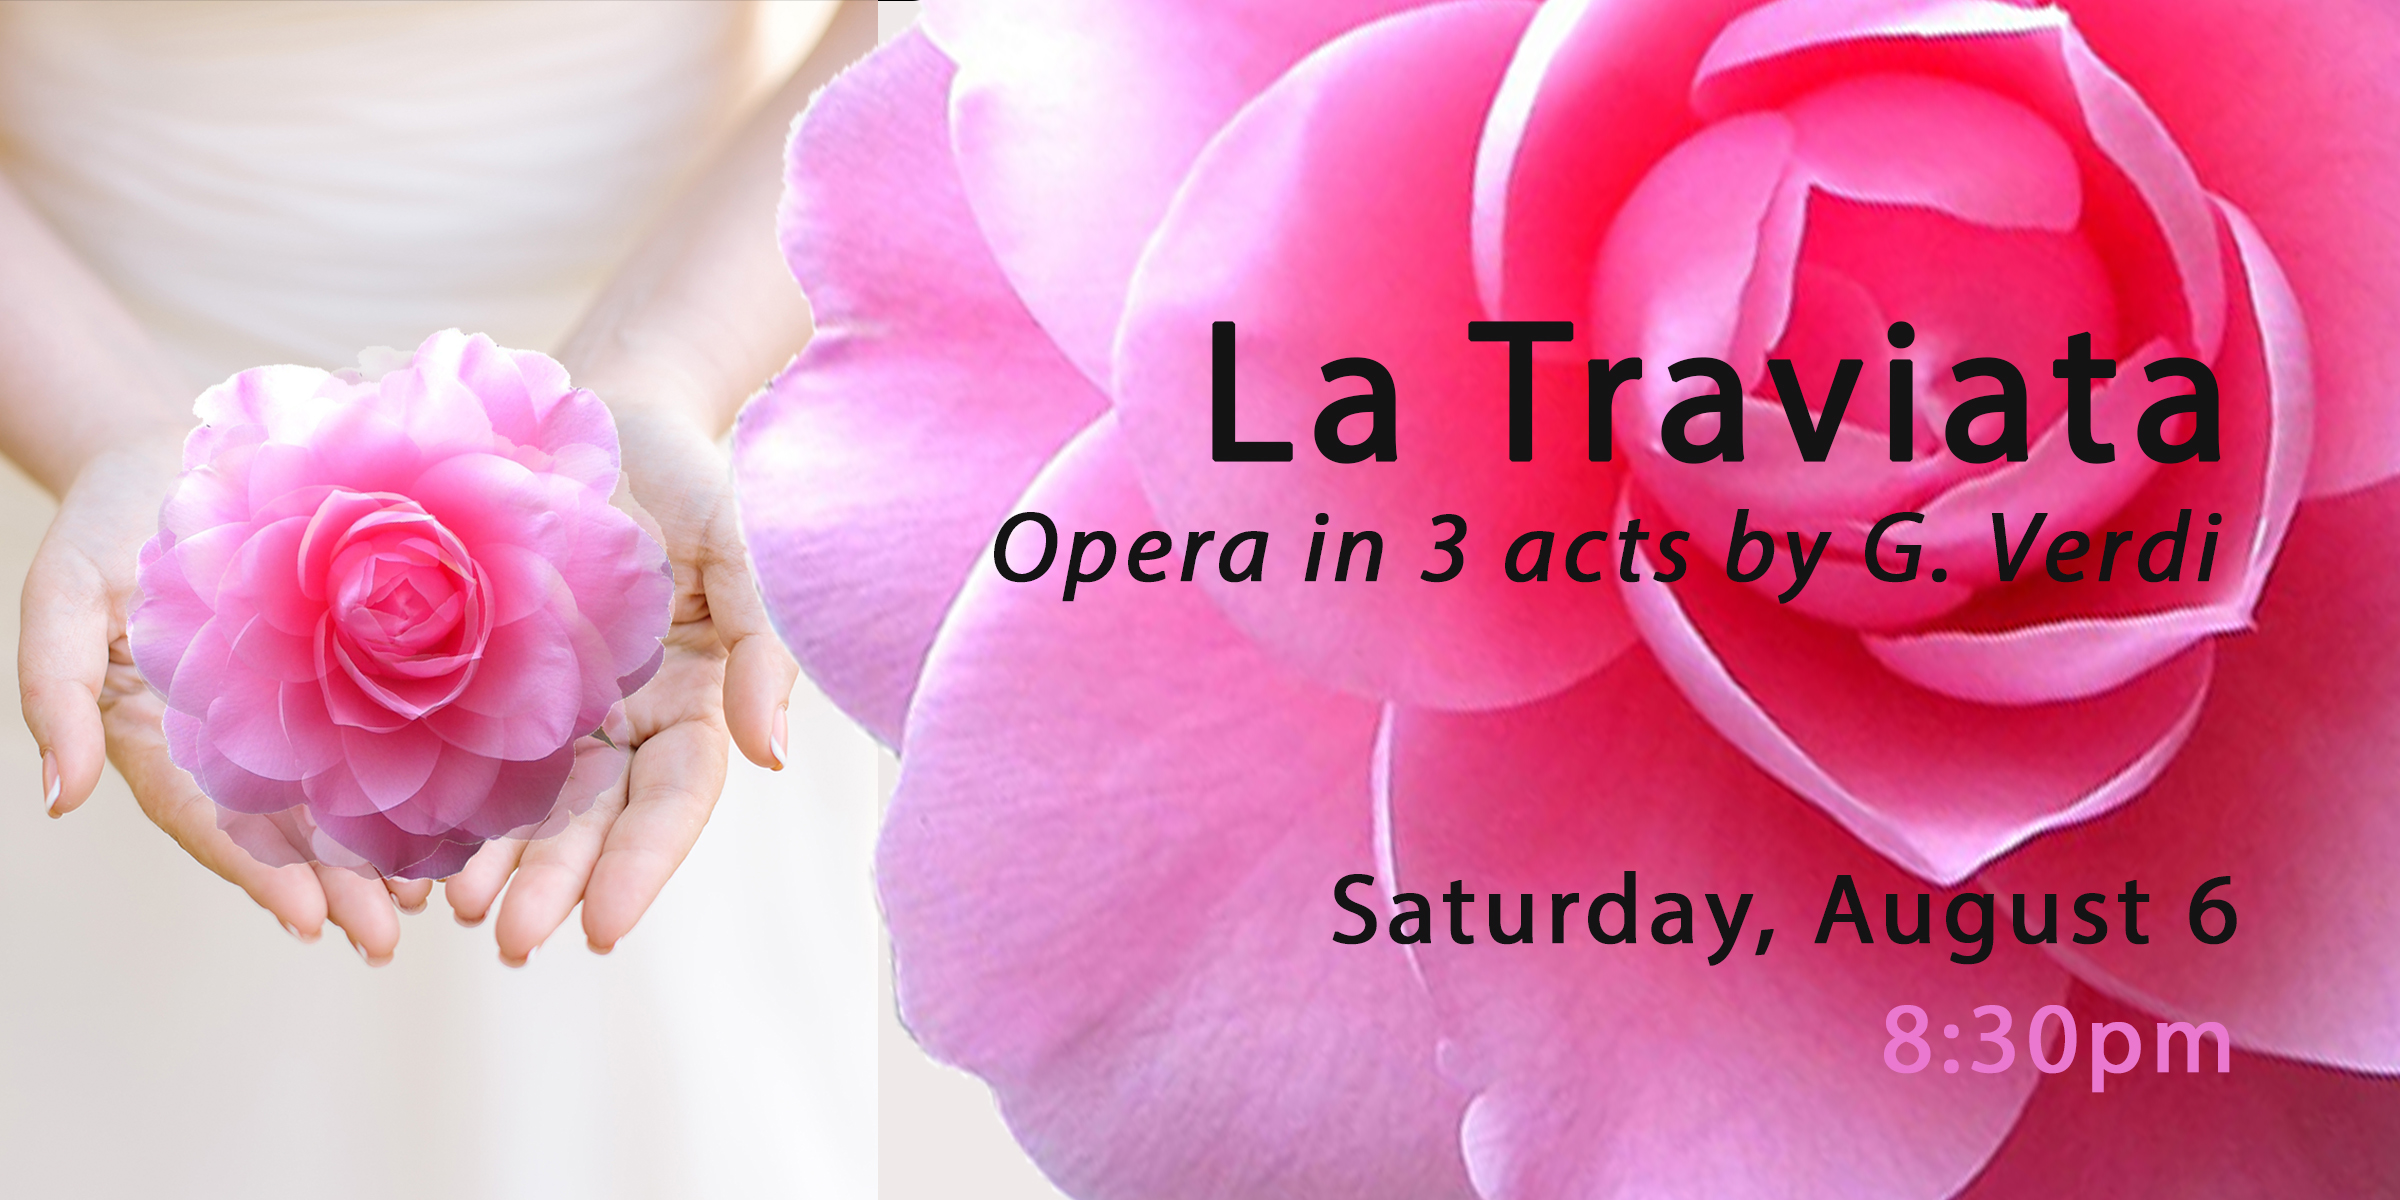 La Traviata Opera event banner